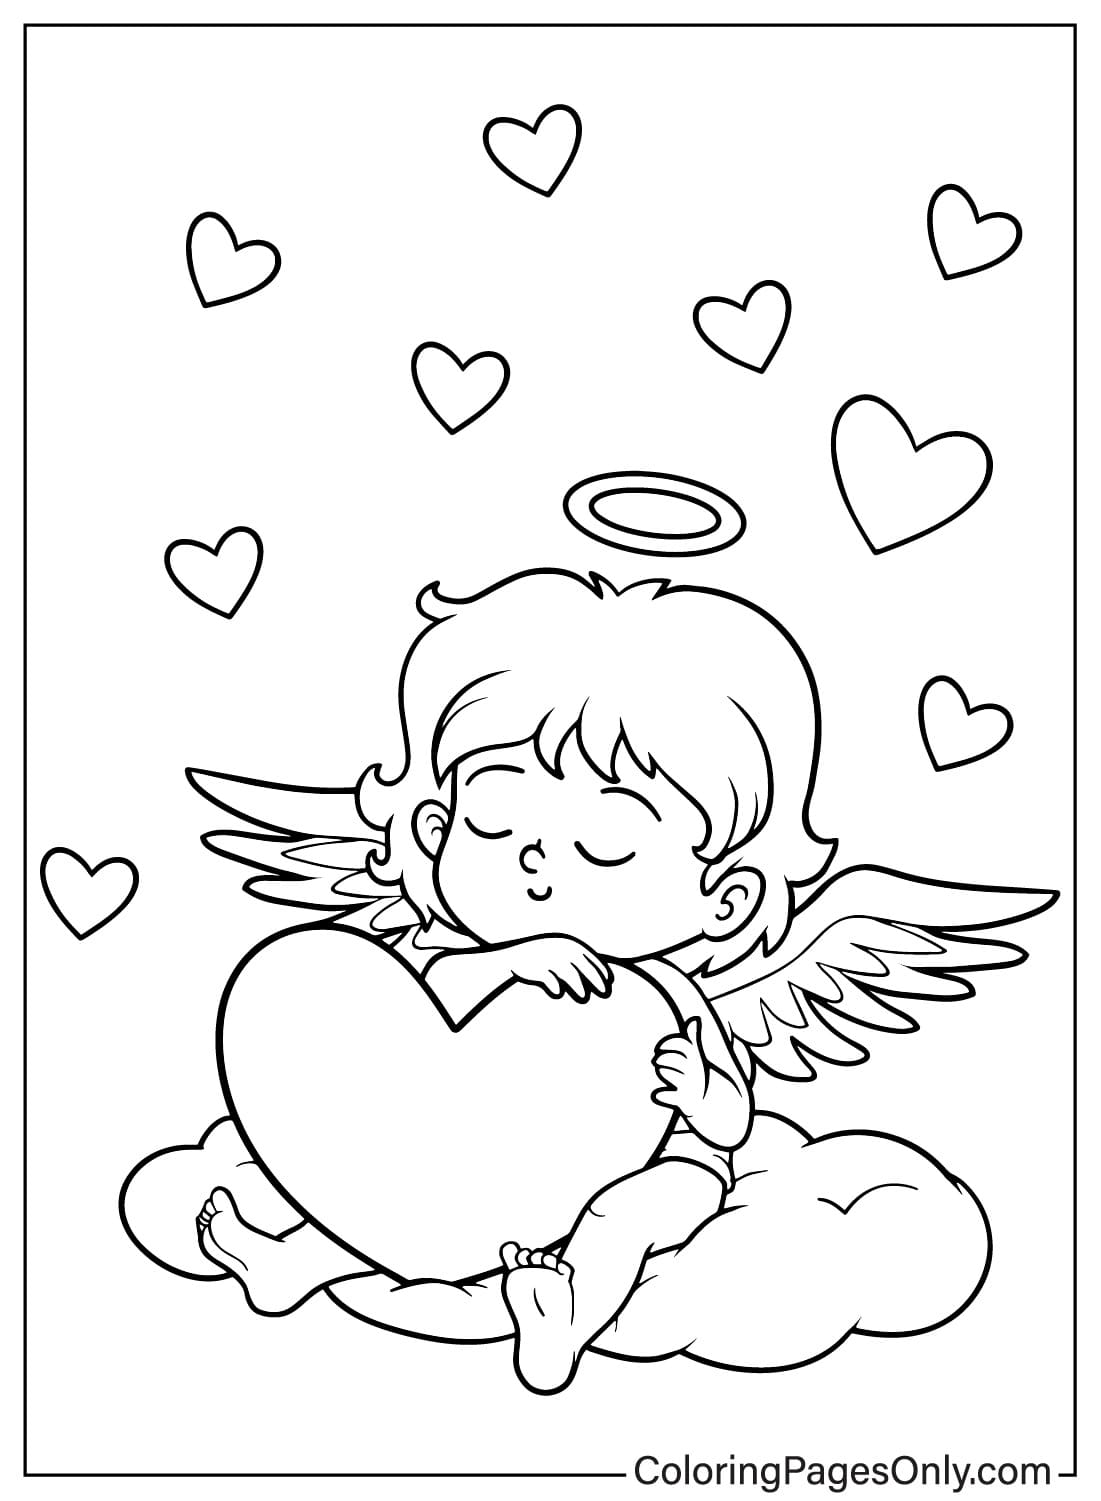 Página para colorear de Cupido imprimible de Cupido